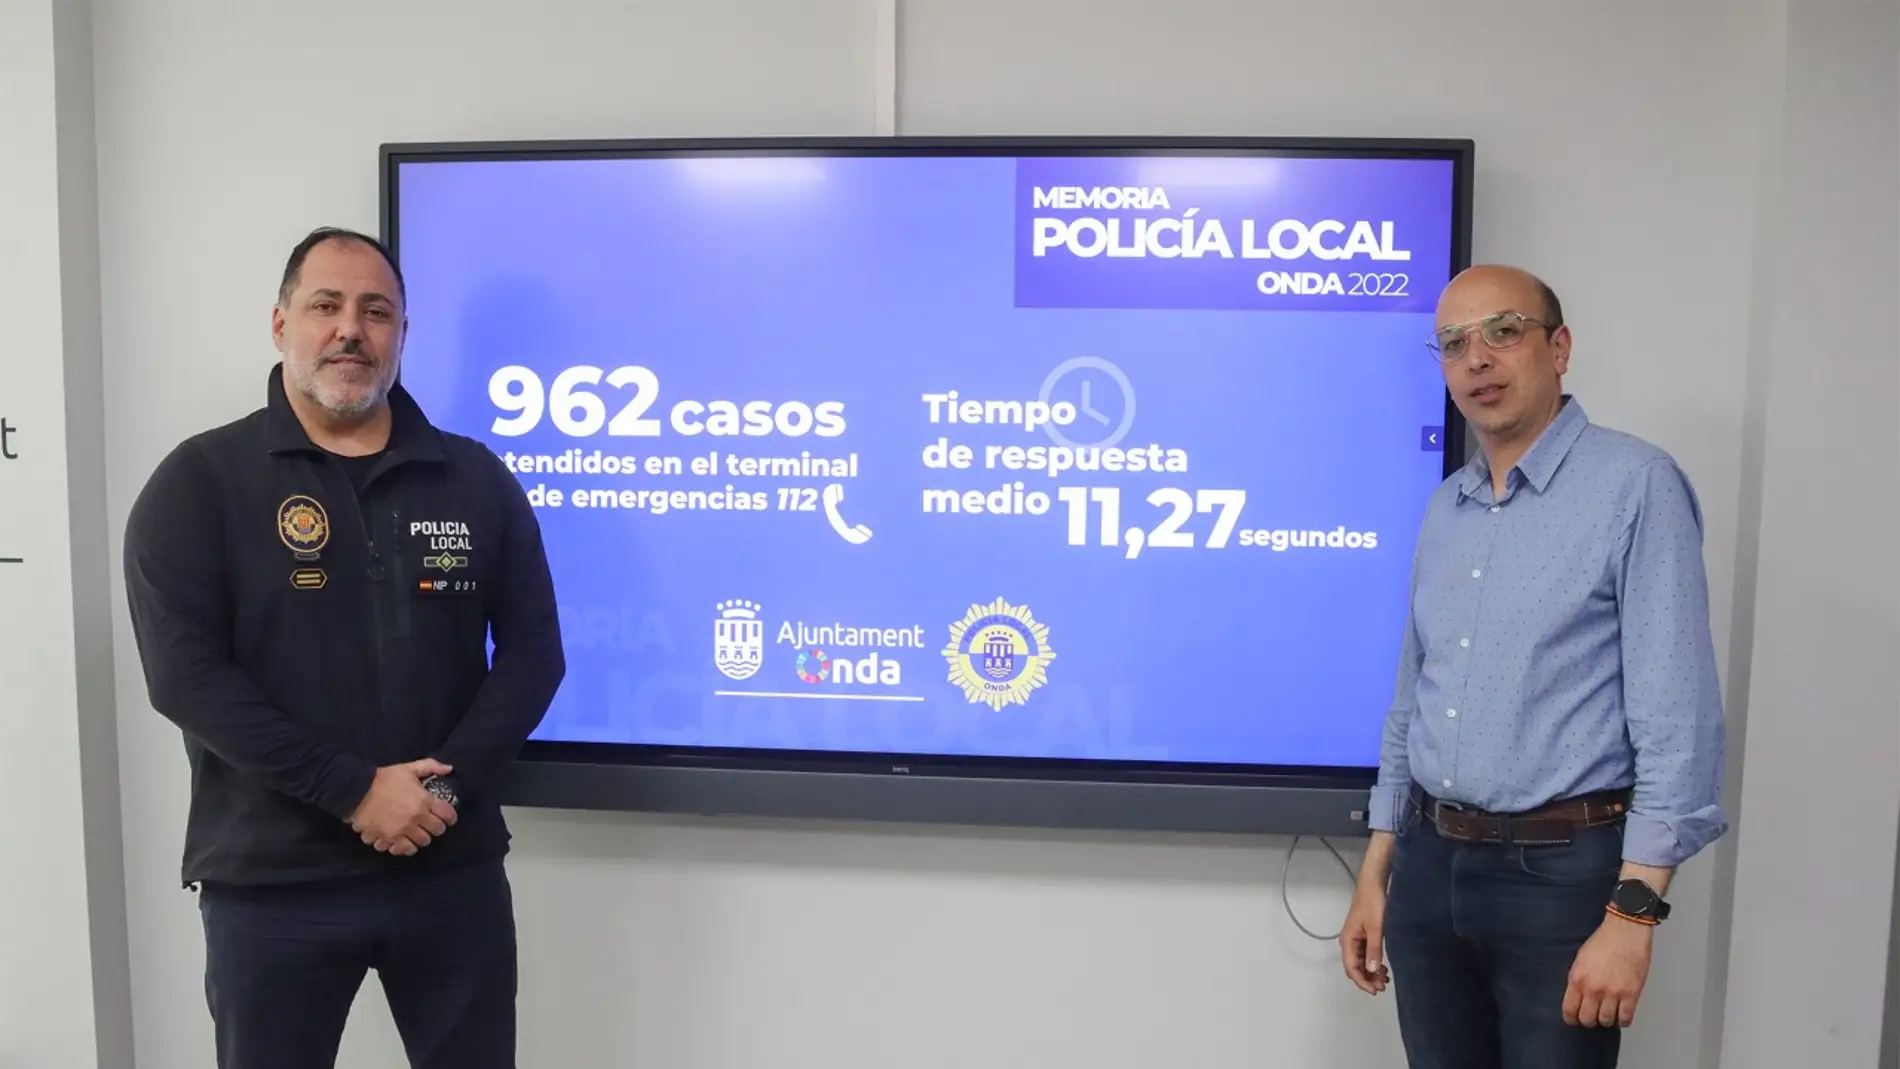 La Policía Local de Onda Cercanía con 962 casos atendidos y 147 mediaciones vecinales